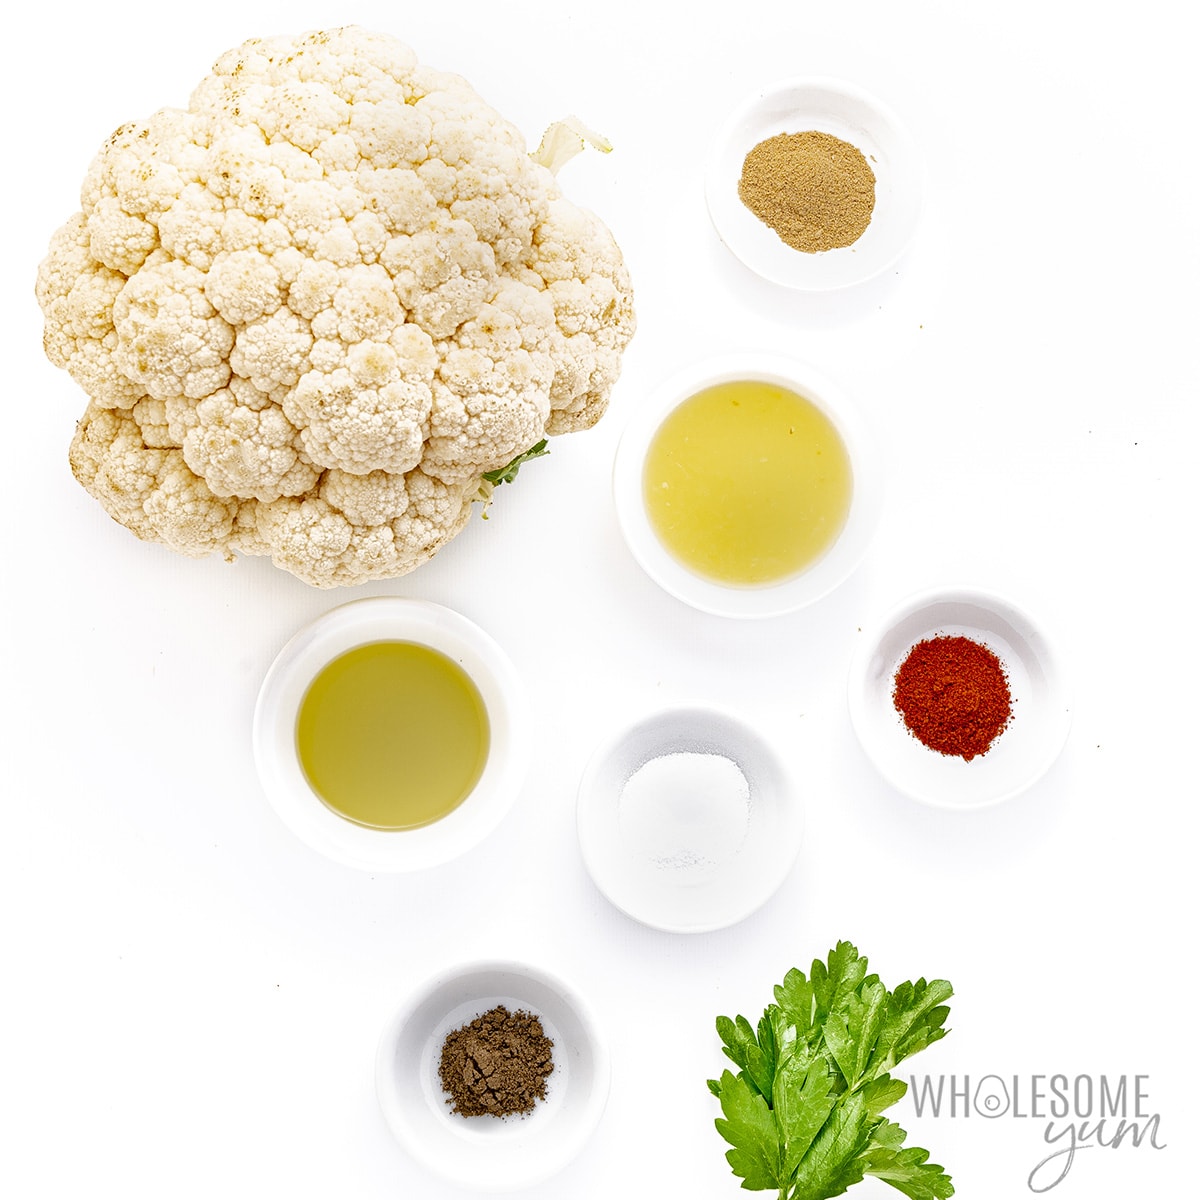 Instant Pot cauliflower ingredients.